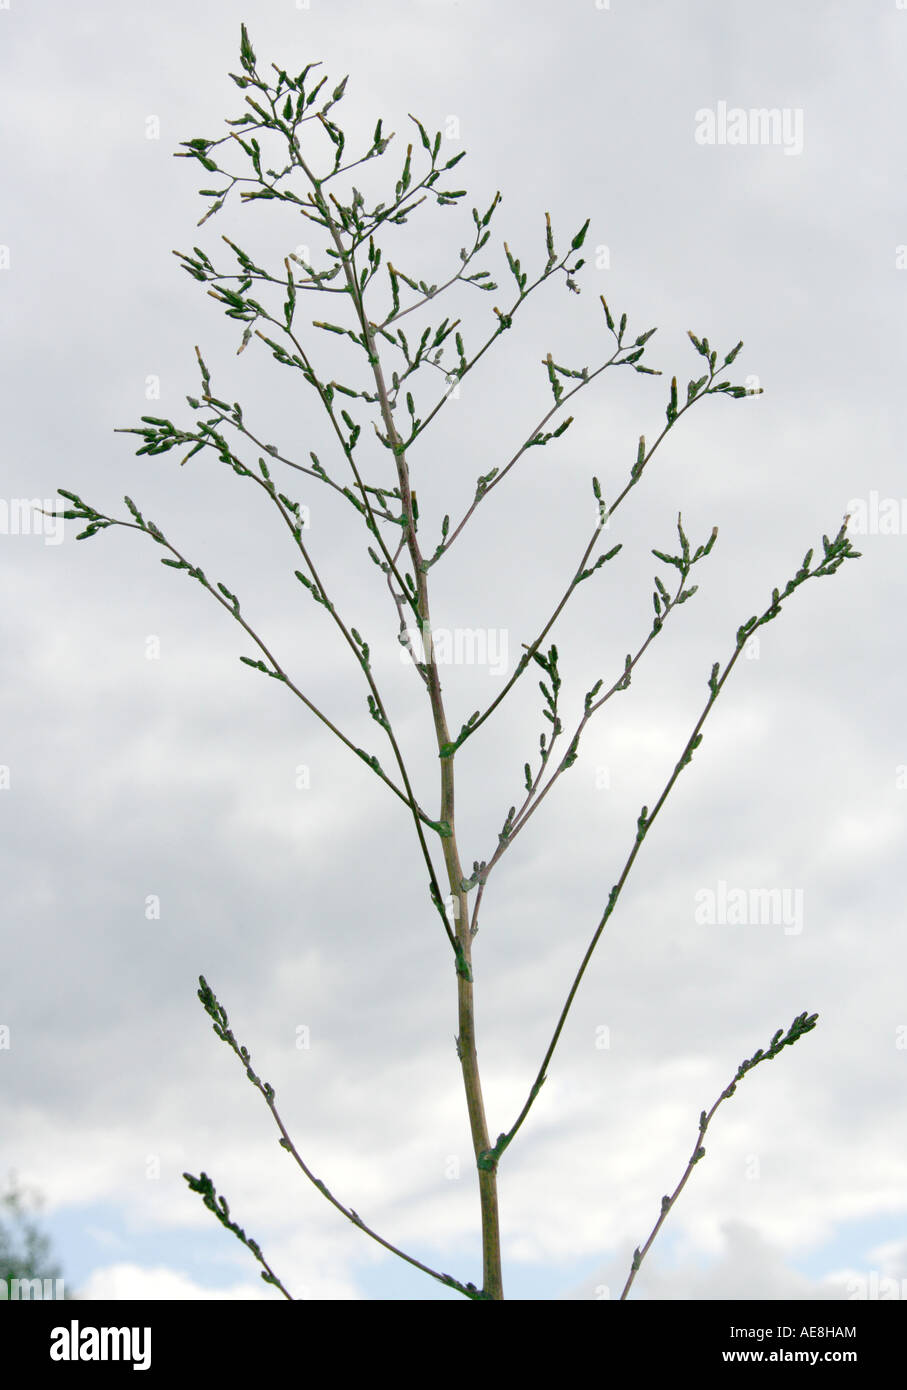 Laitue, Lactuca serriola, Asteraceae, composées Banque D'Images